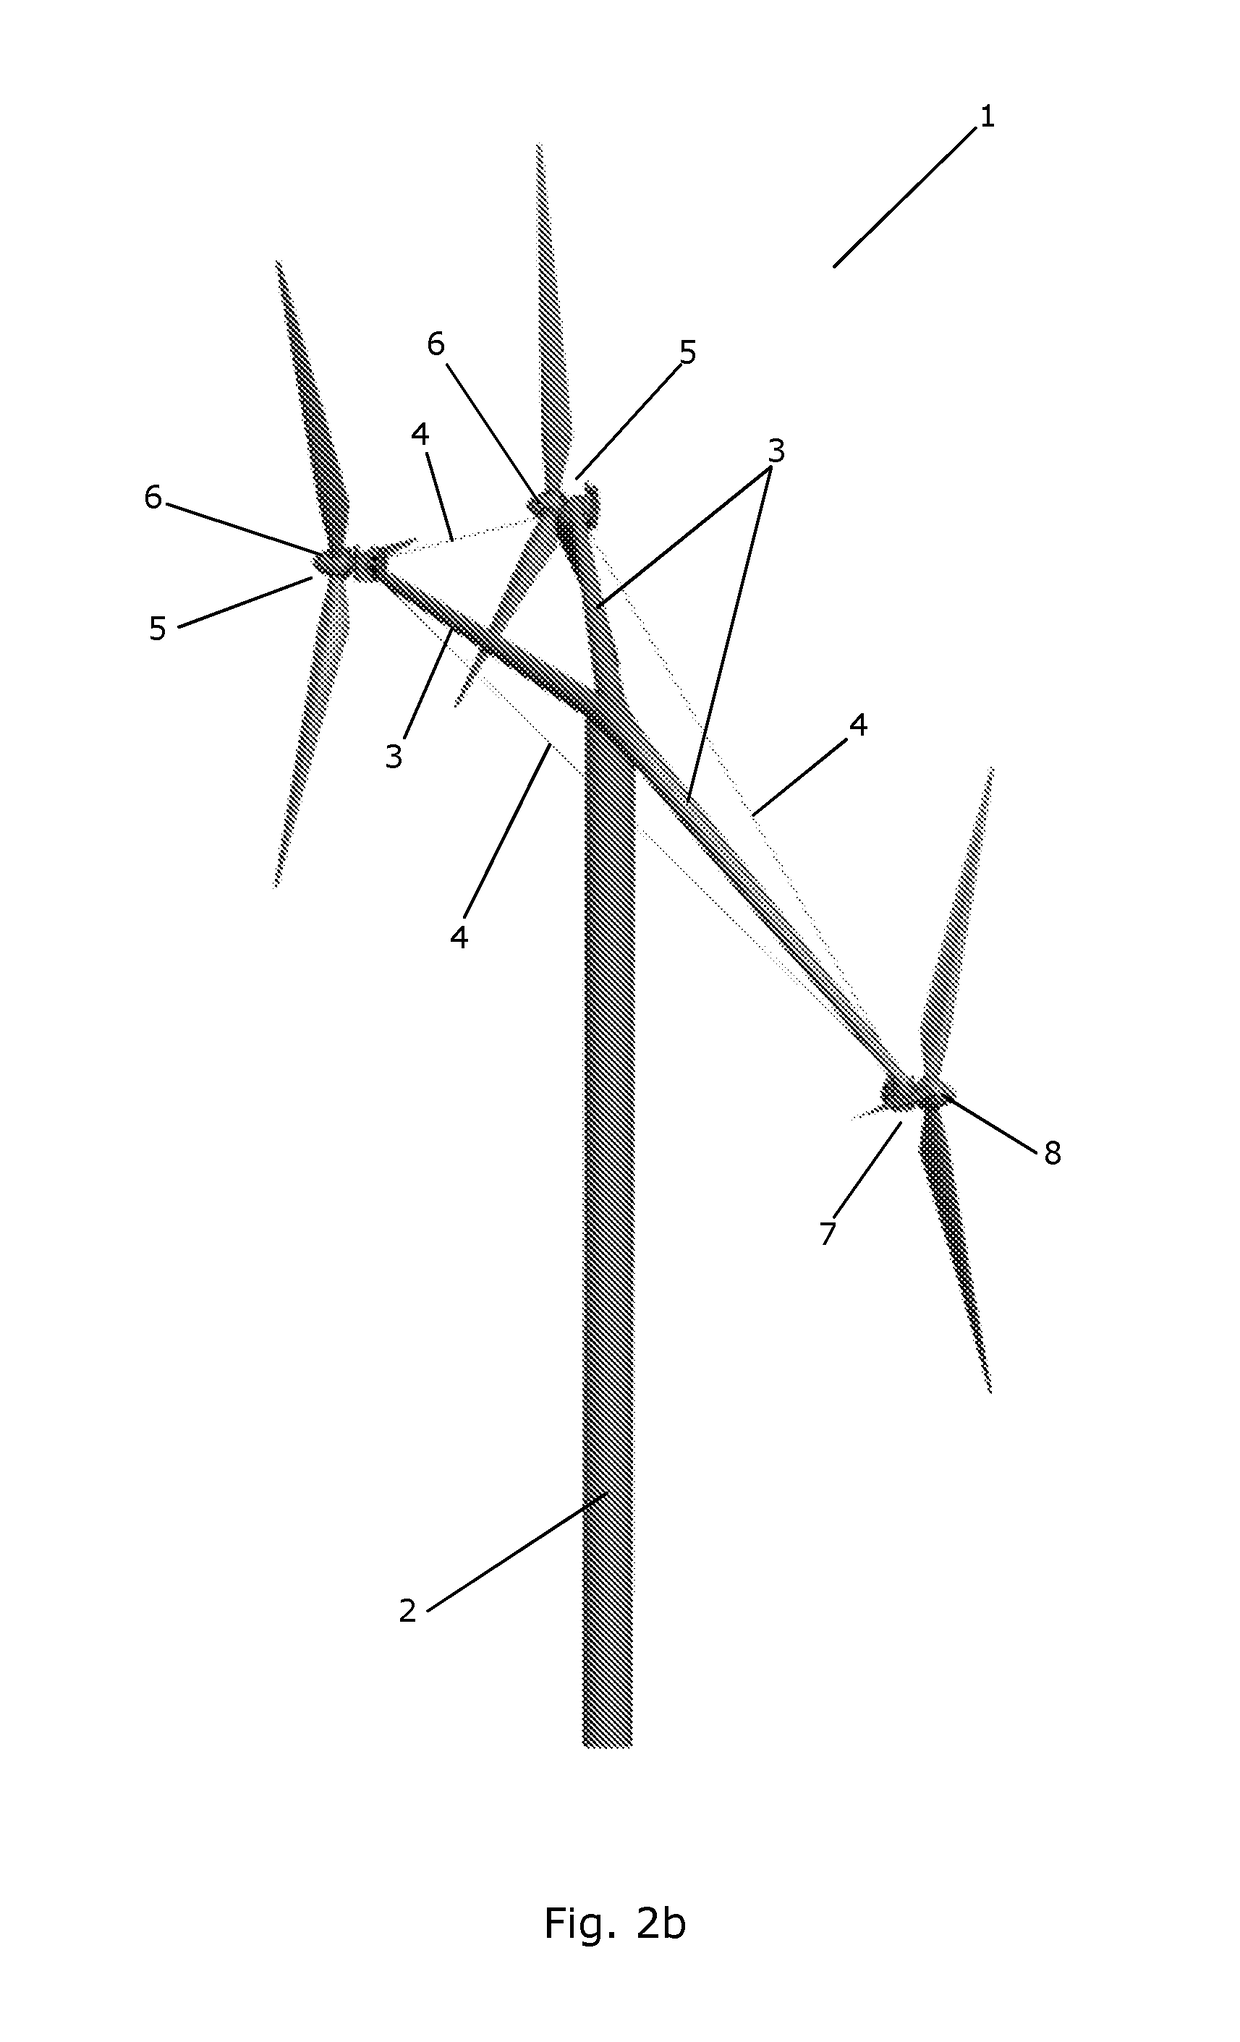 A multirotor wind turbine